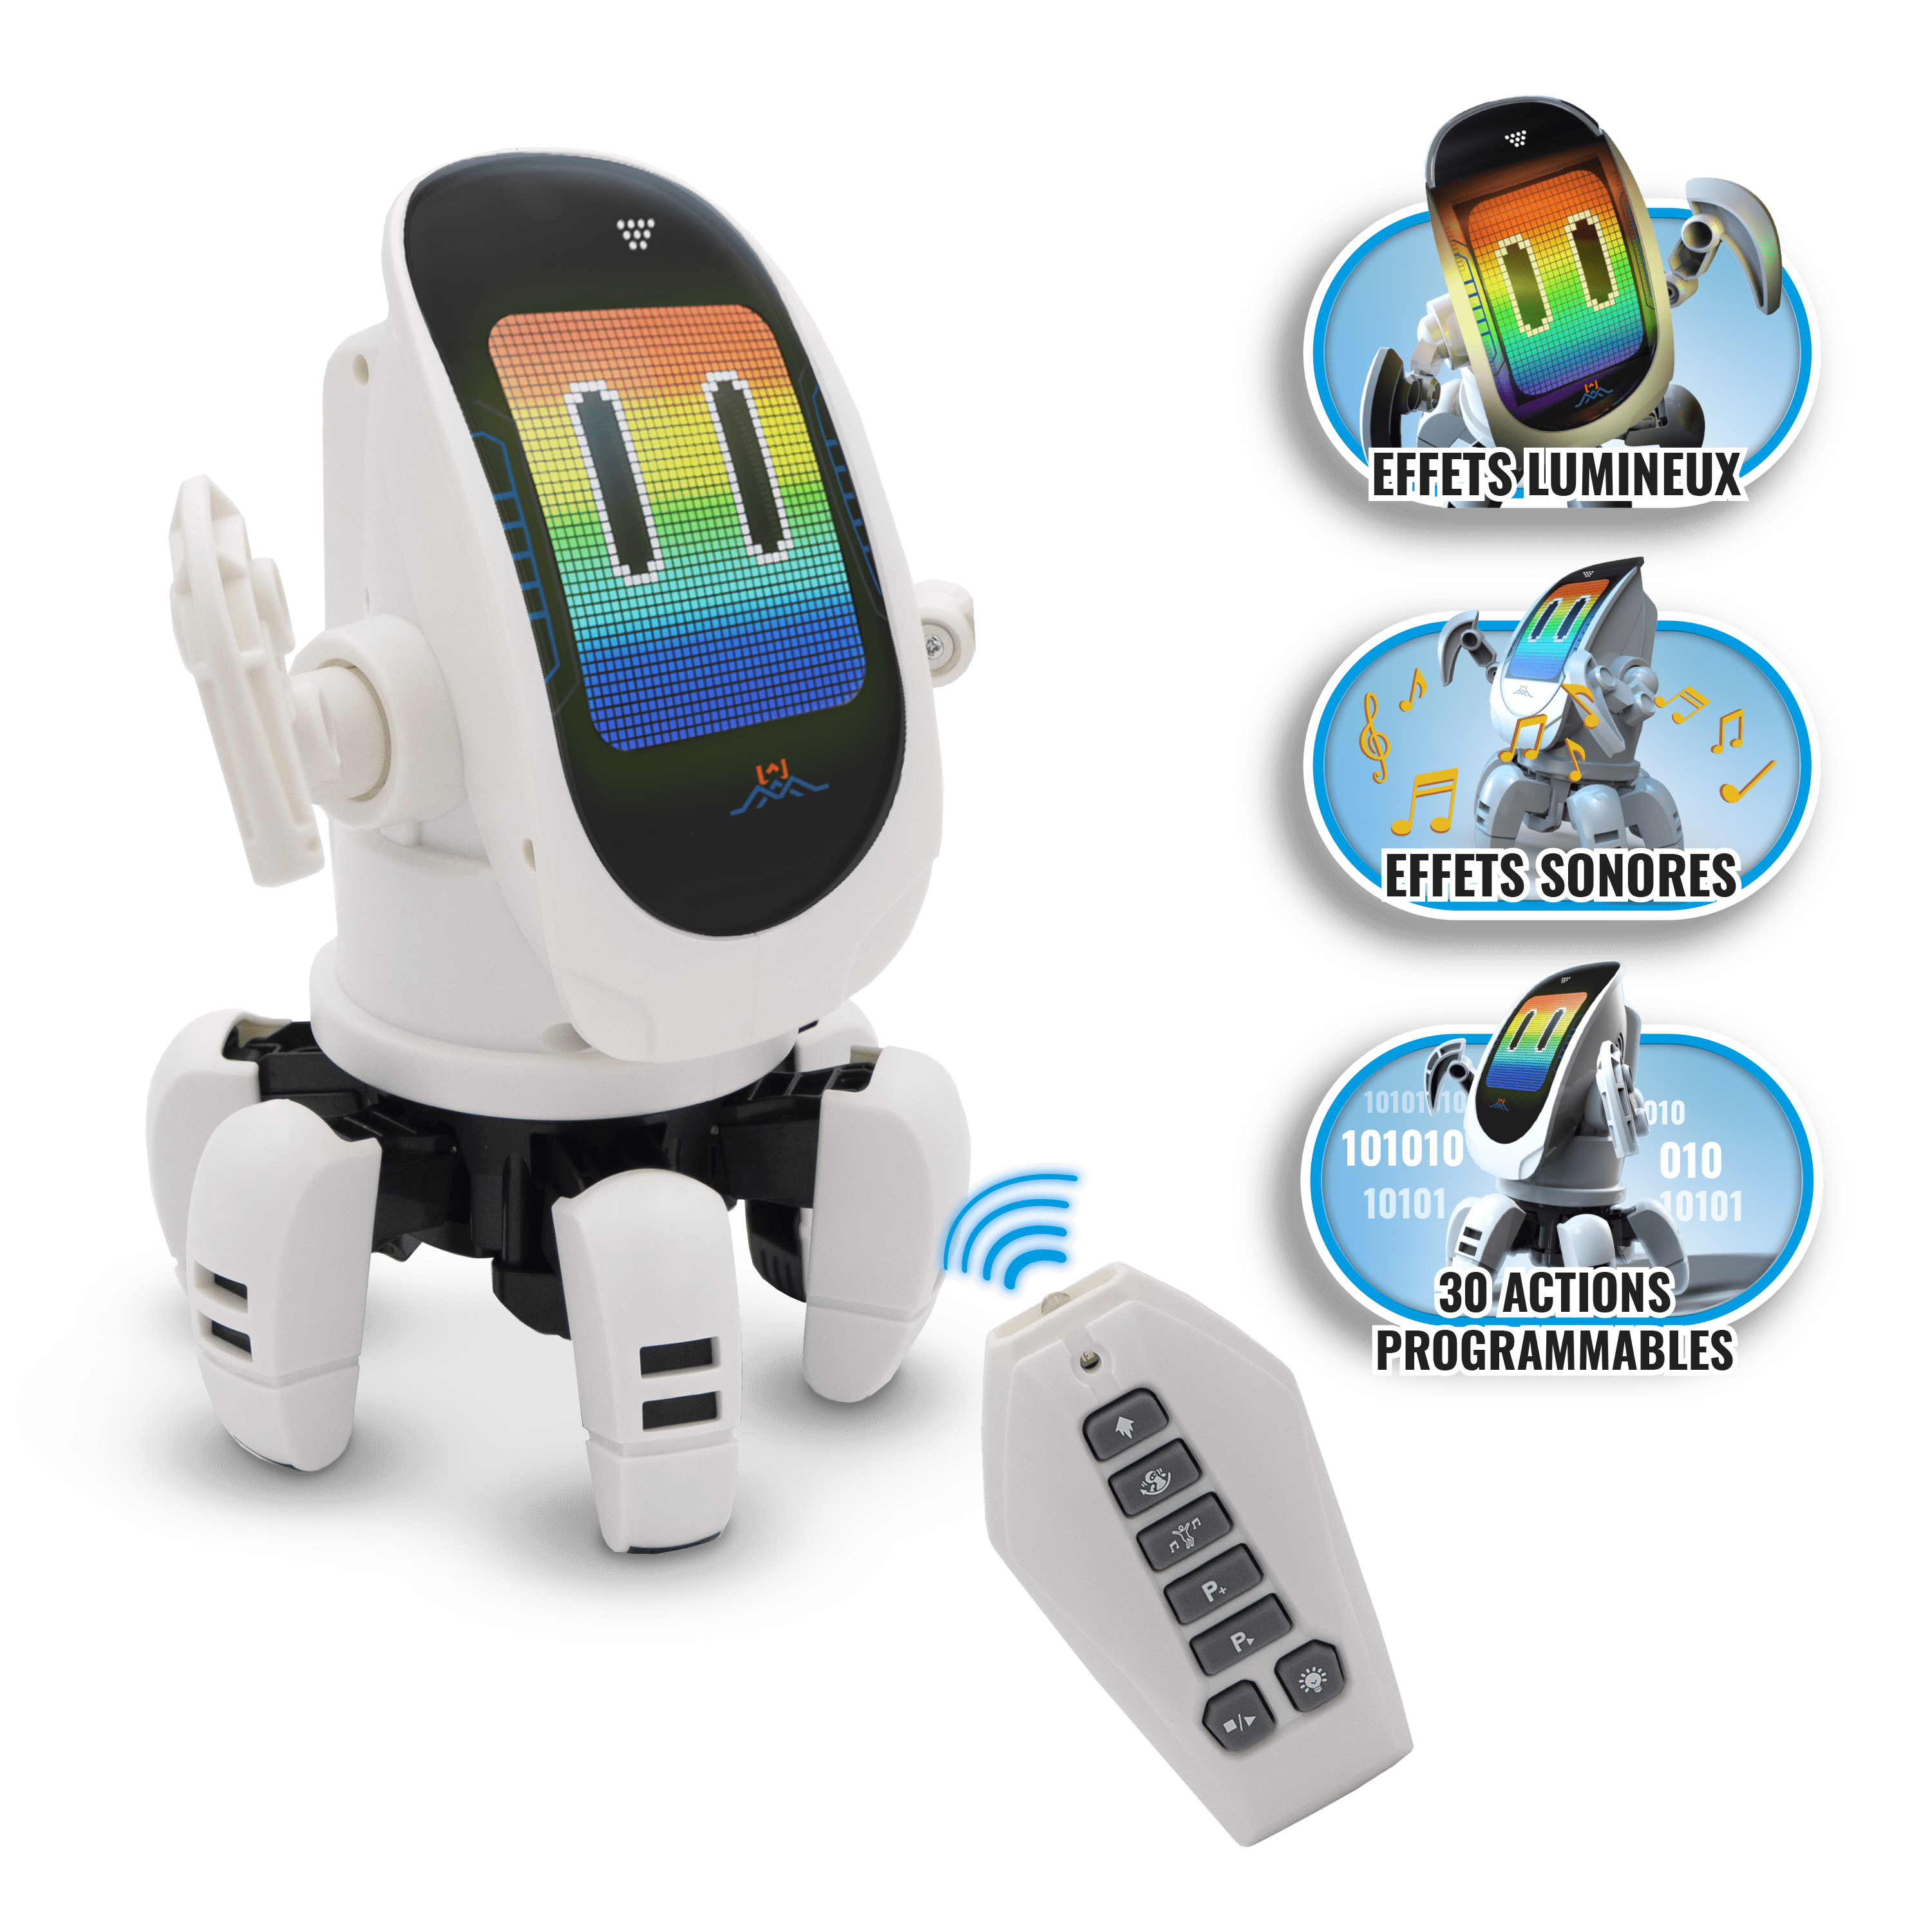 Generic Robot De Combat Télécommandé - Enfant - Blanc/Bleu - Prix pas cher